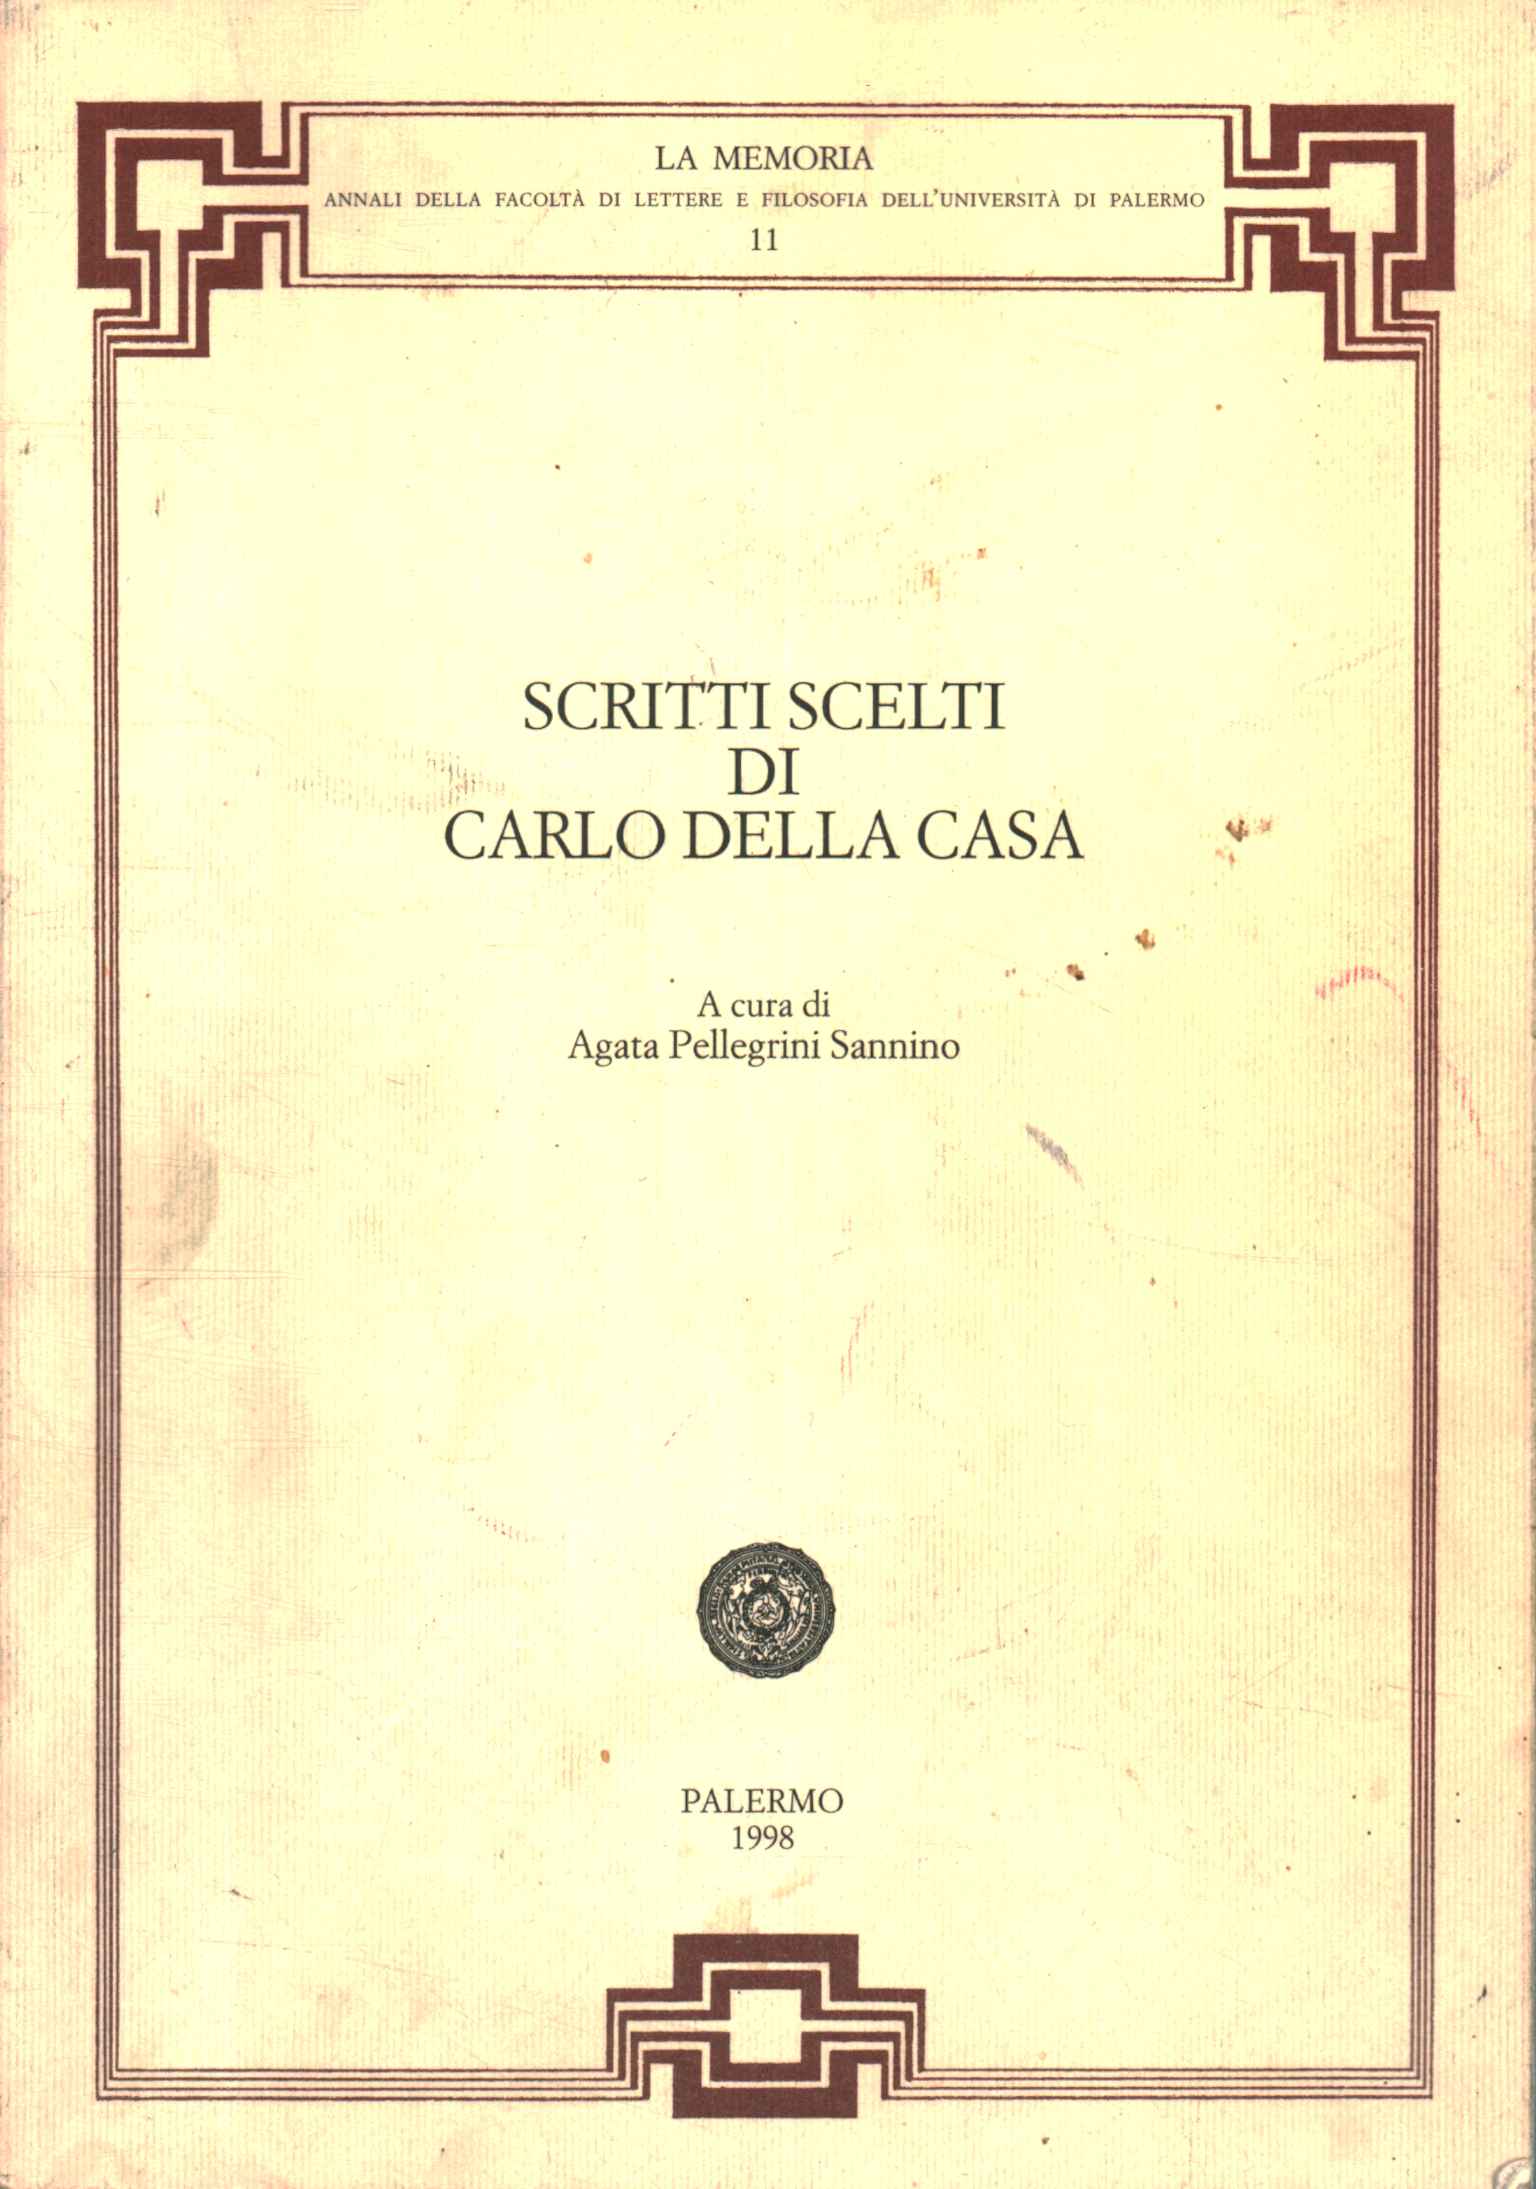 Ausgewählte Schriften von Carlo Della Casa